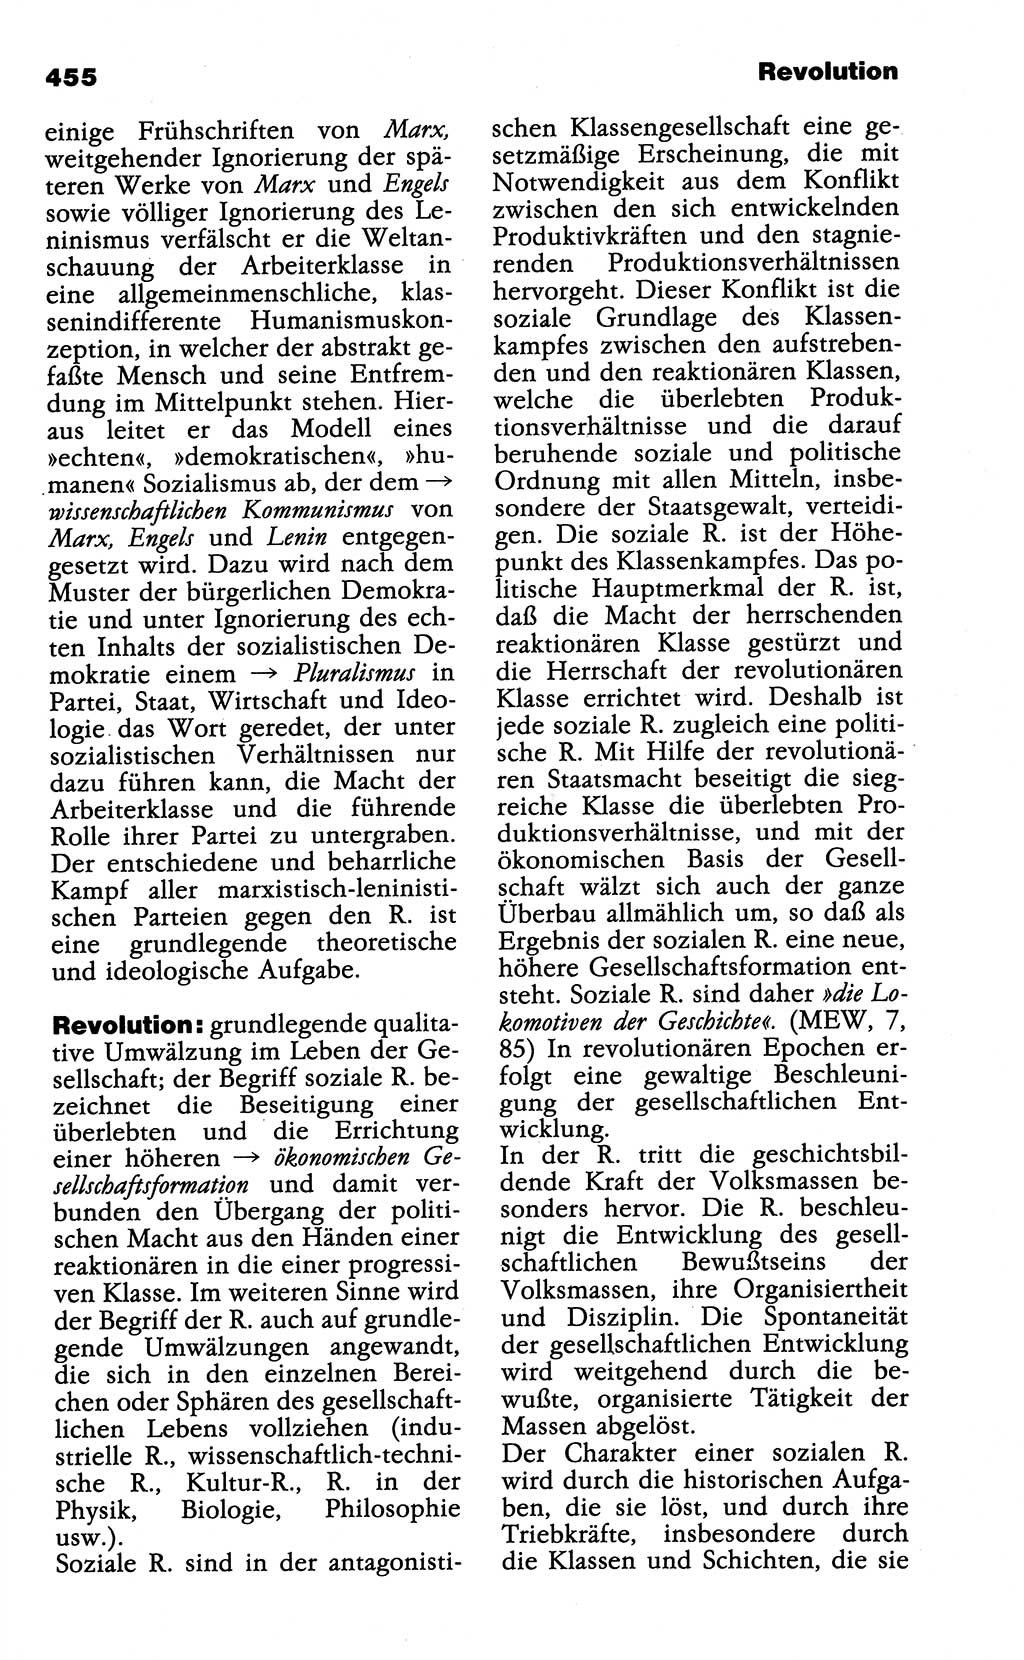 Wörterbuch der marxistisch-leninistischen Philosophie [Deutsche Demokratische Republik (DDR)] 1985, Seite 455 (Wb. ML Phil. DDR 1985, S. 455)